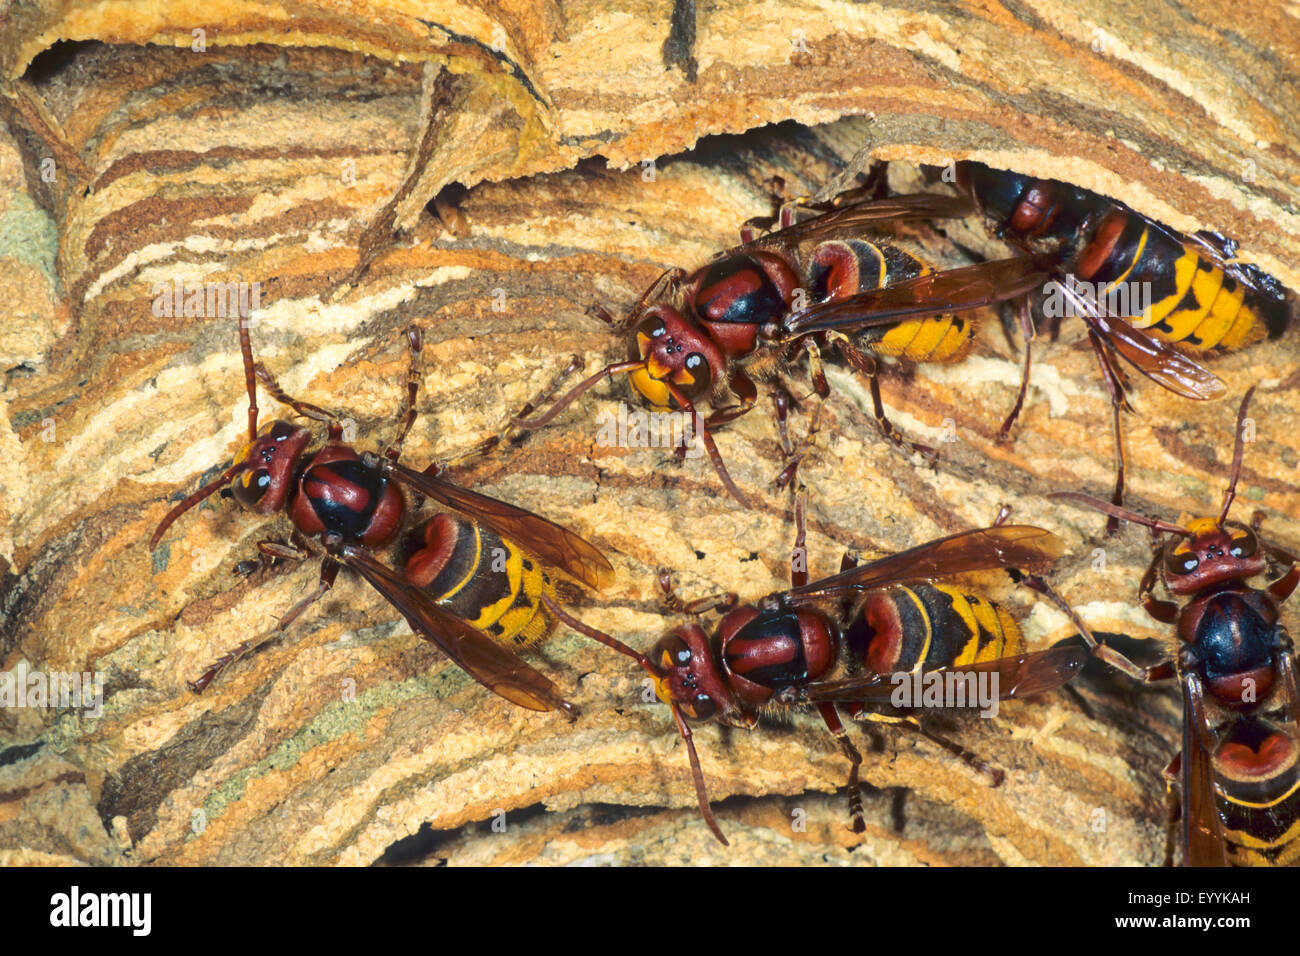 Hornet, marrone hornet, Europeo hornet (Vespa crabro), calabroni in un nido di calabroni, Germania Foto Stock